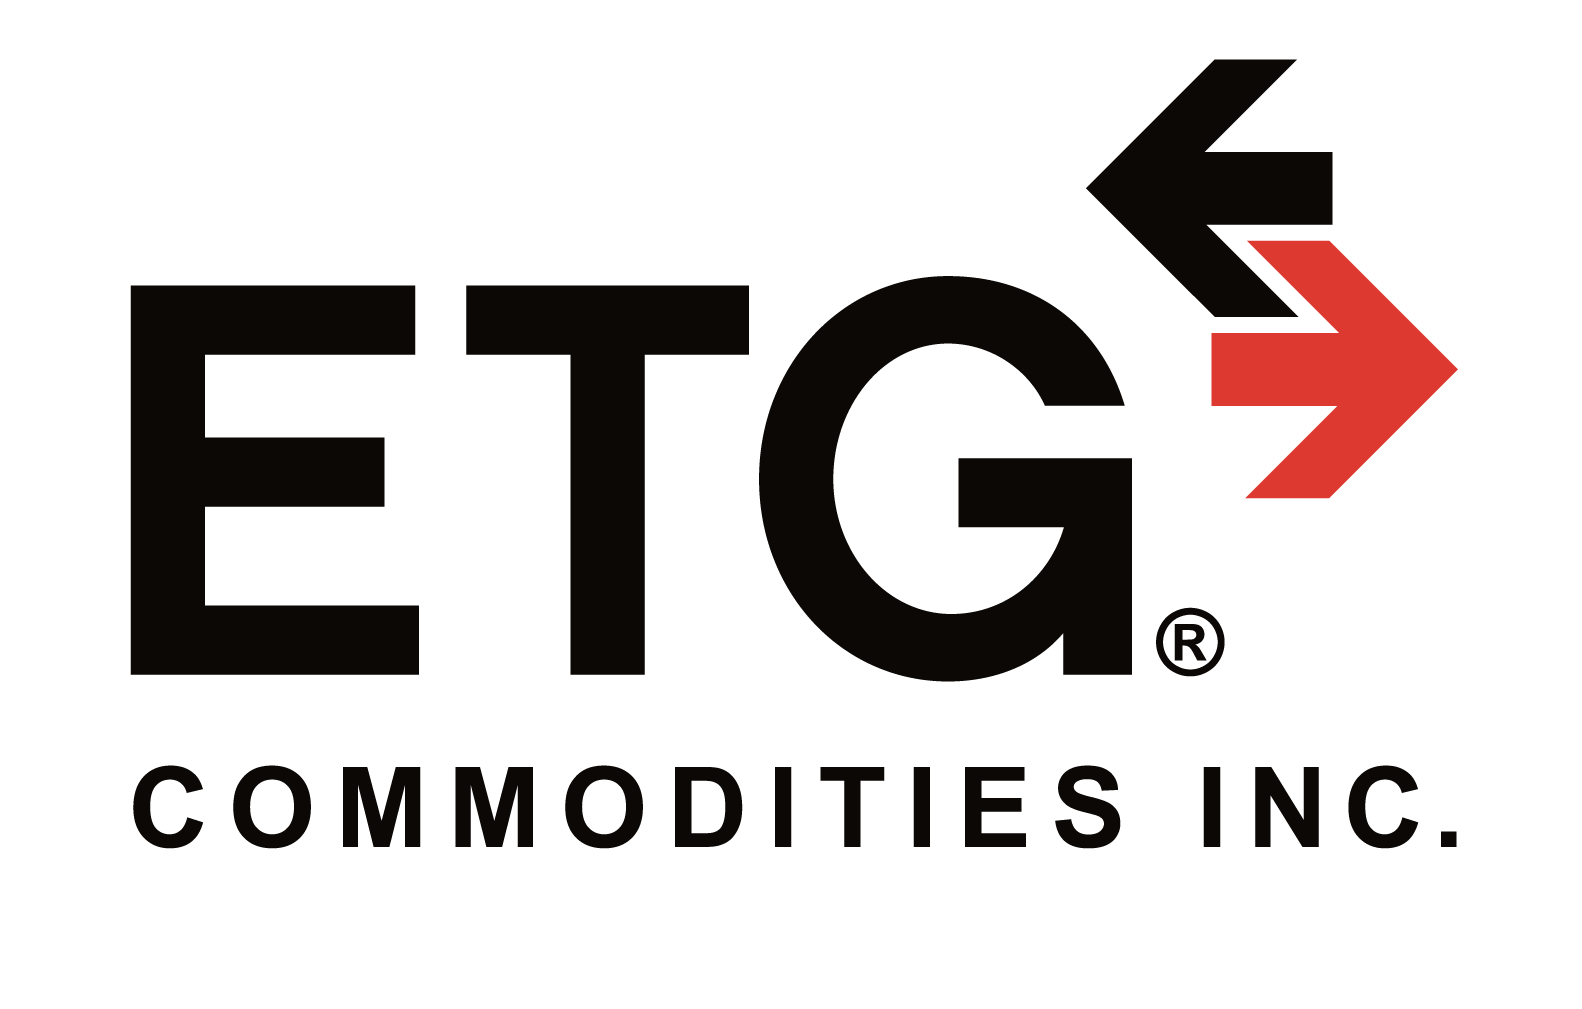 ETG Commodities